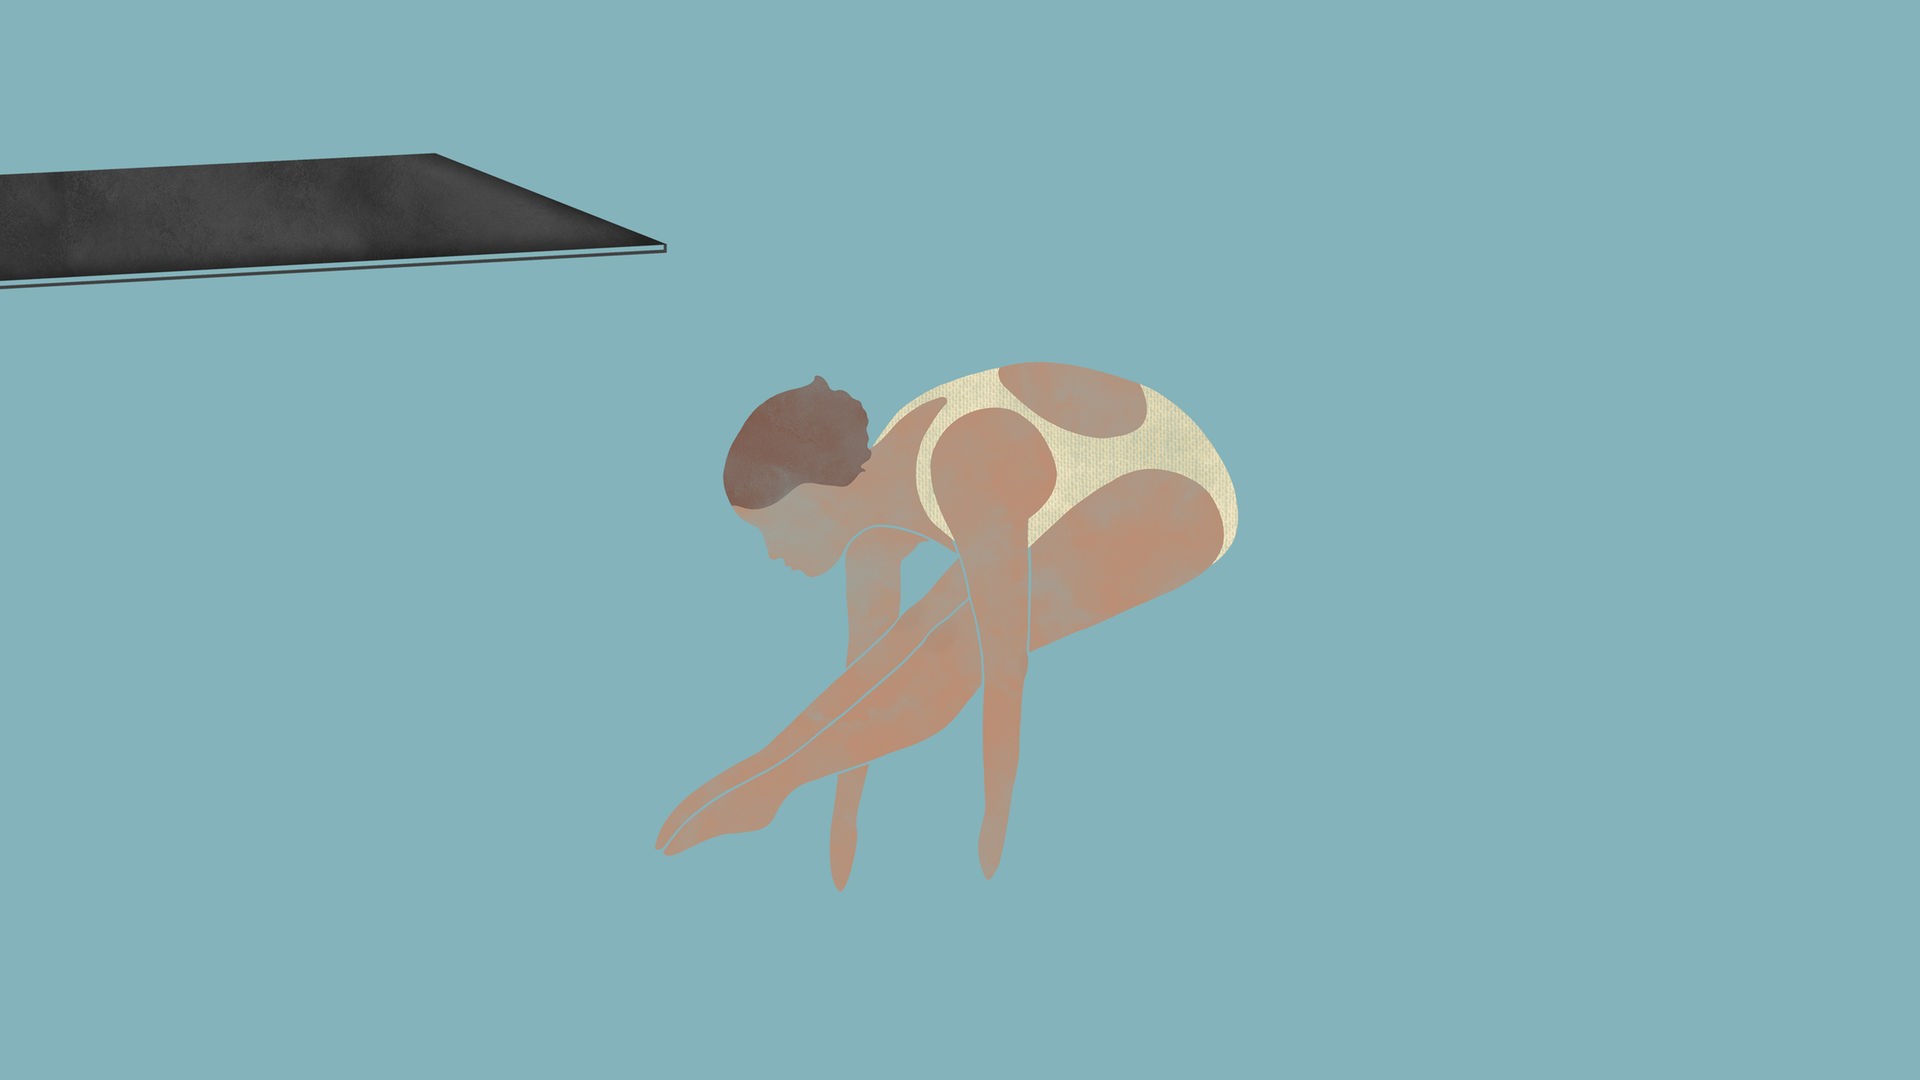 Die Turmspringerinnen: Die Zeichnung zur Episode 4 des Podcasts zeigt eine Turmspringerin mit angewinkelten Beinen in der Luft nach dem Absprung vom Brett.